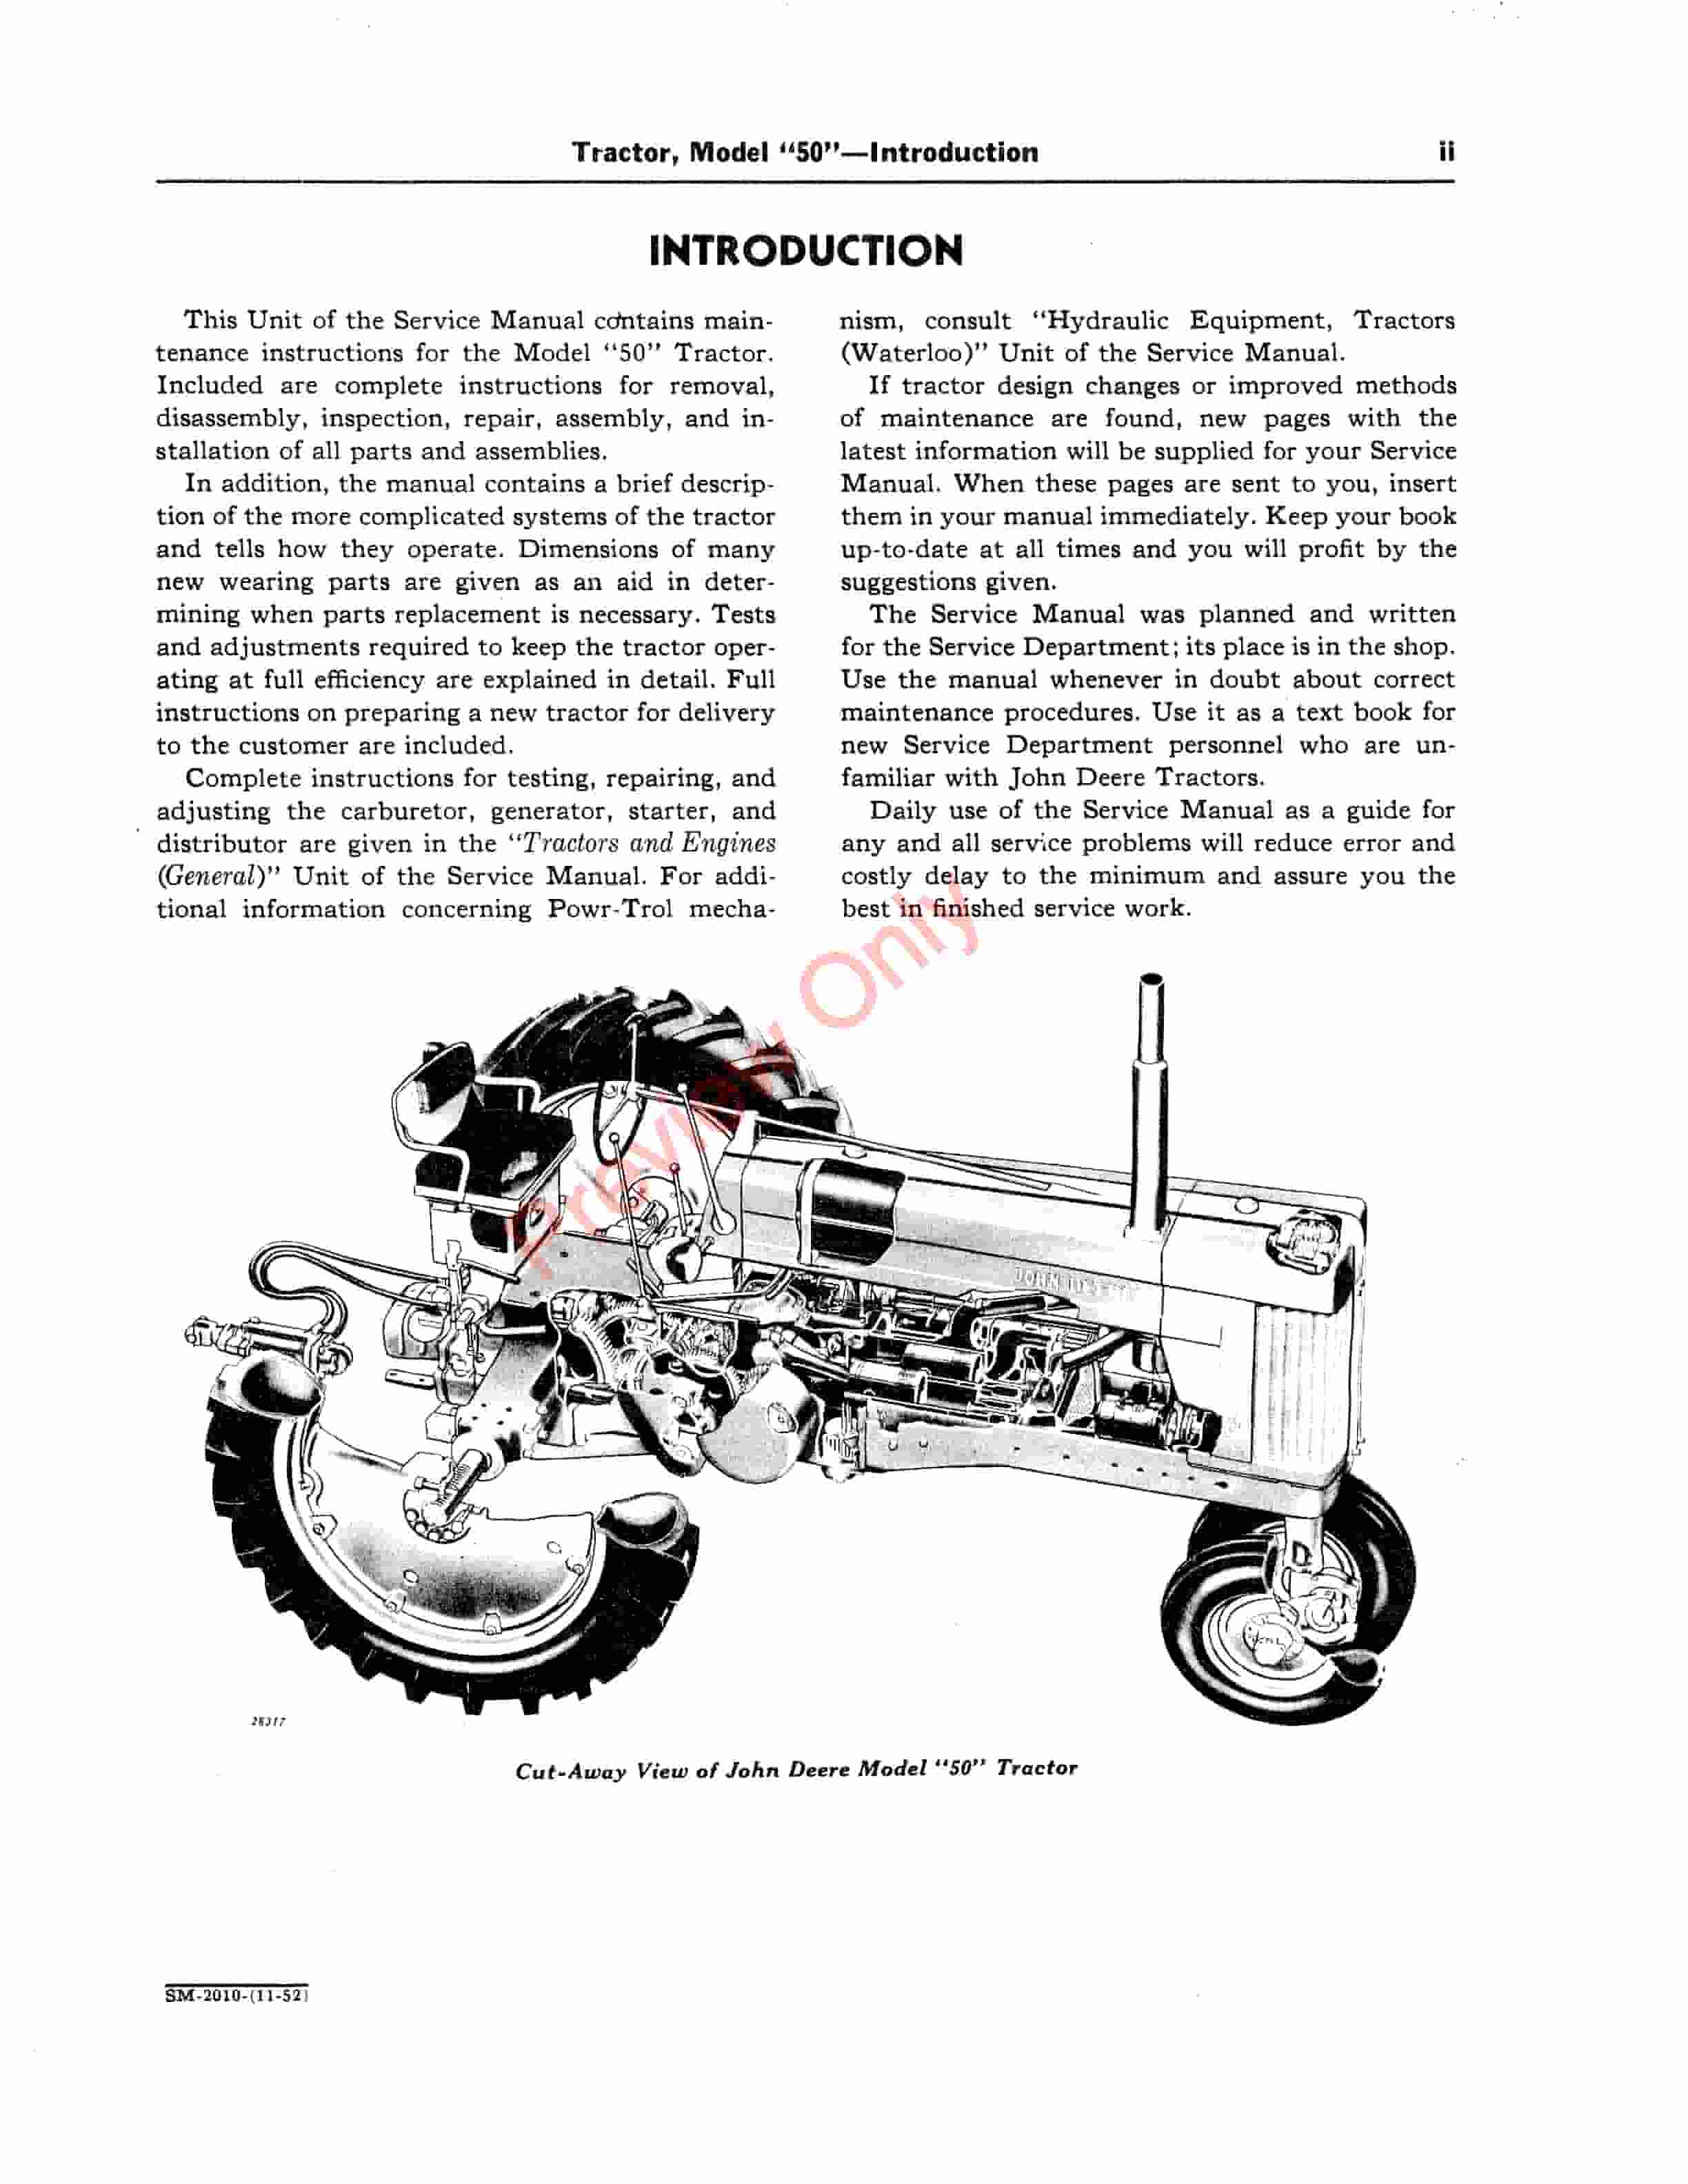 John Deere Model 50 Series Tractors Service Manual SM2010 01NOV52-4